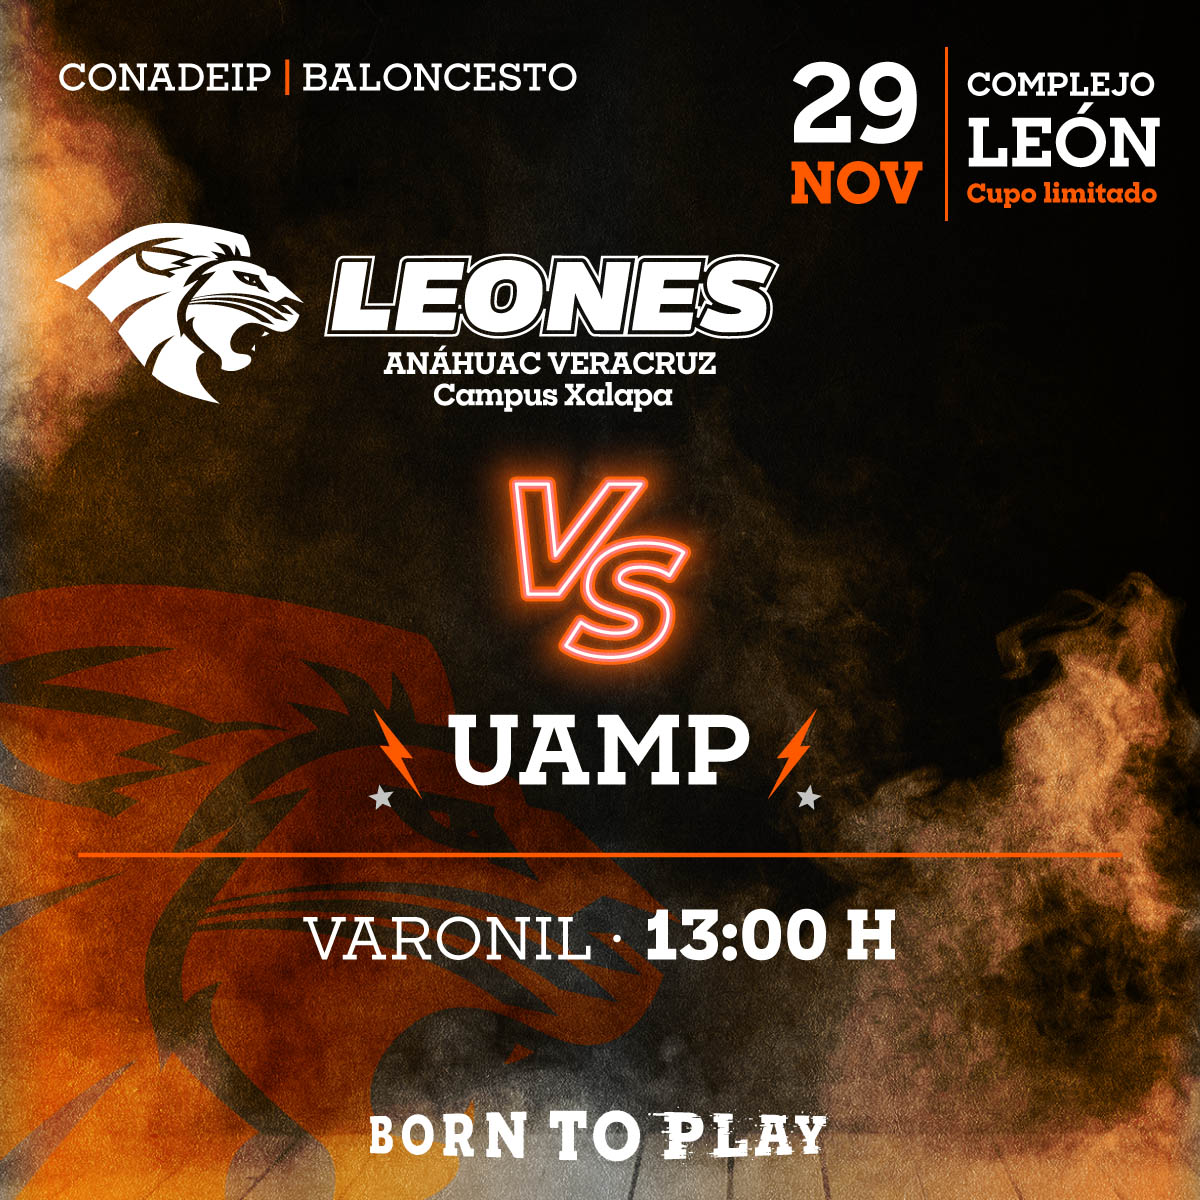 Baloncesto Varonil: Leones vs UAMP